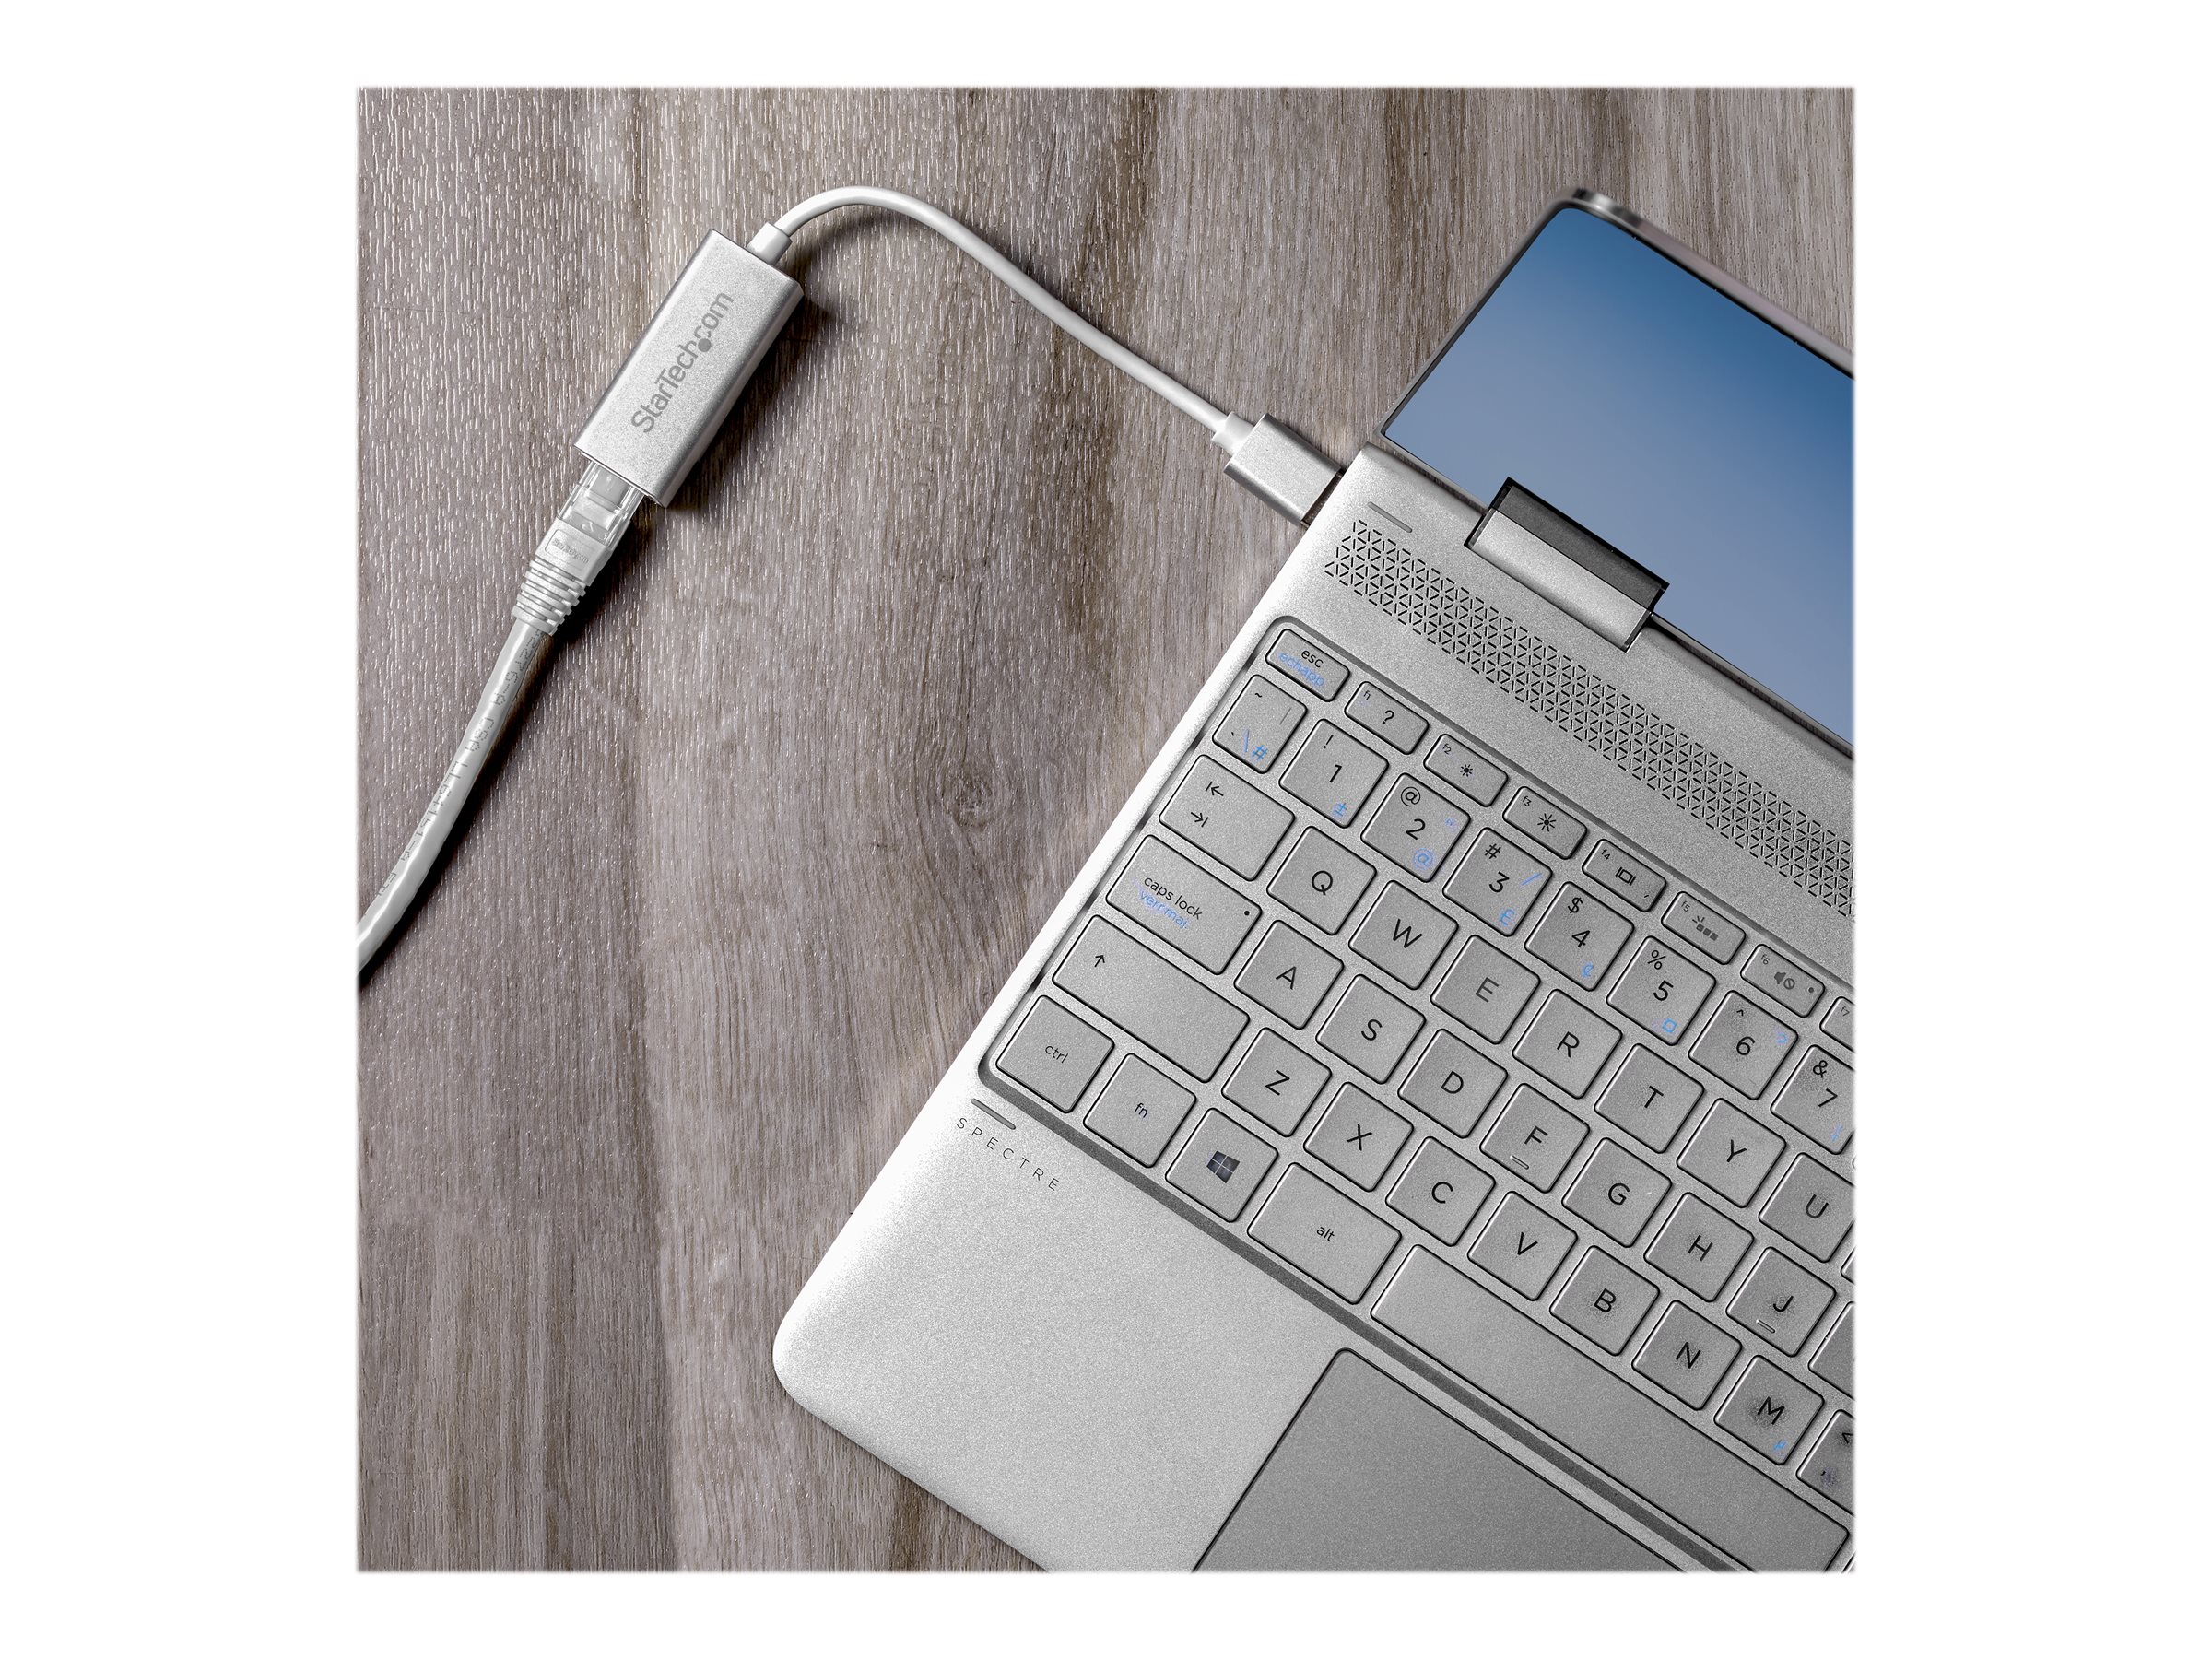 StarTech.com USB 3.0 auf Gigabit Netzwerkadapter - Silber - Schlankes Aluminium Design für MacBook, Chromebook oder Tablet - Netzwerkadapter - USB 3.0 - Gigabit Ethernet x 1